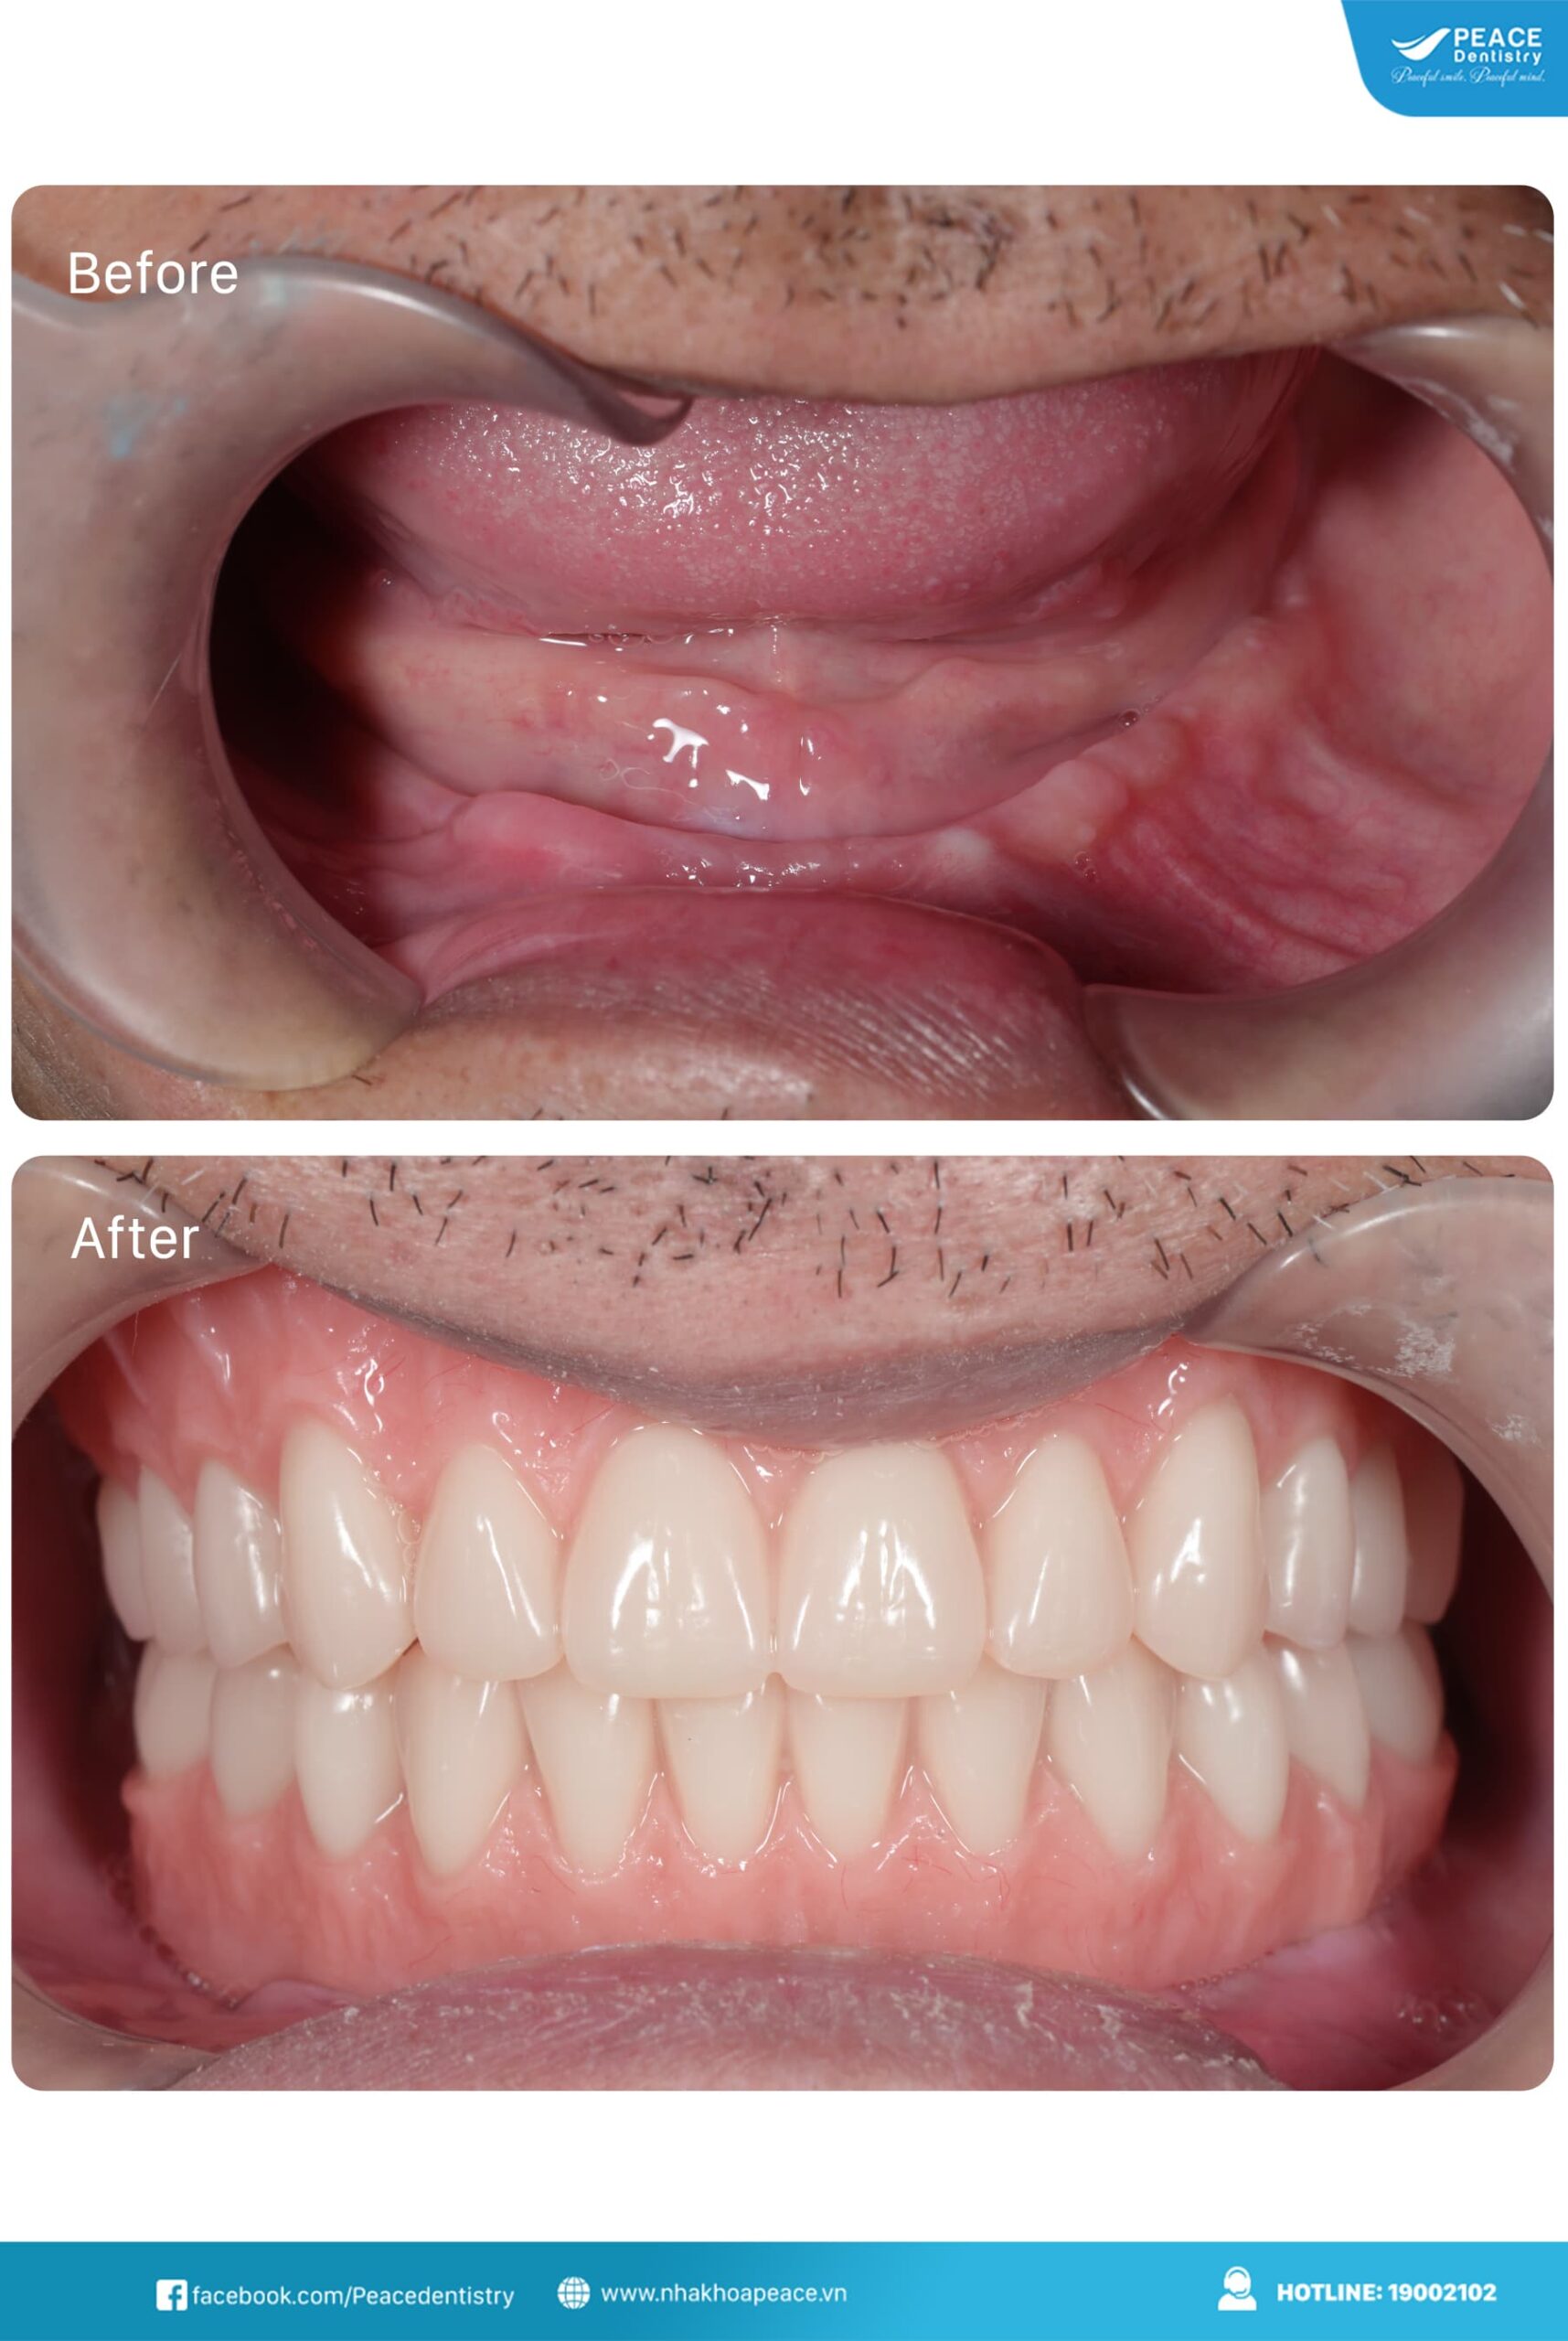 trước và sau khi điều trị với kế hoạch all on 4 implant hàm dưới và hàm tháo lắp hàm trên